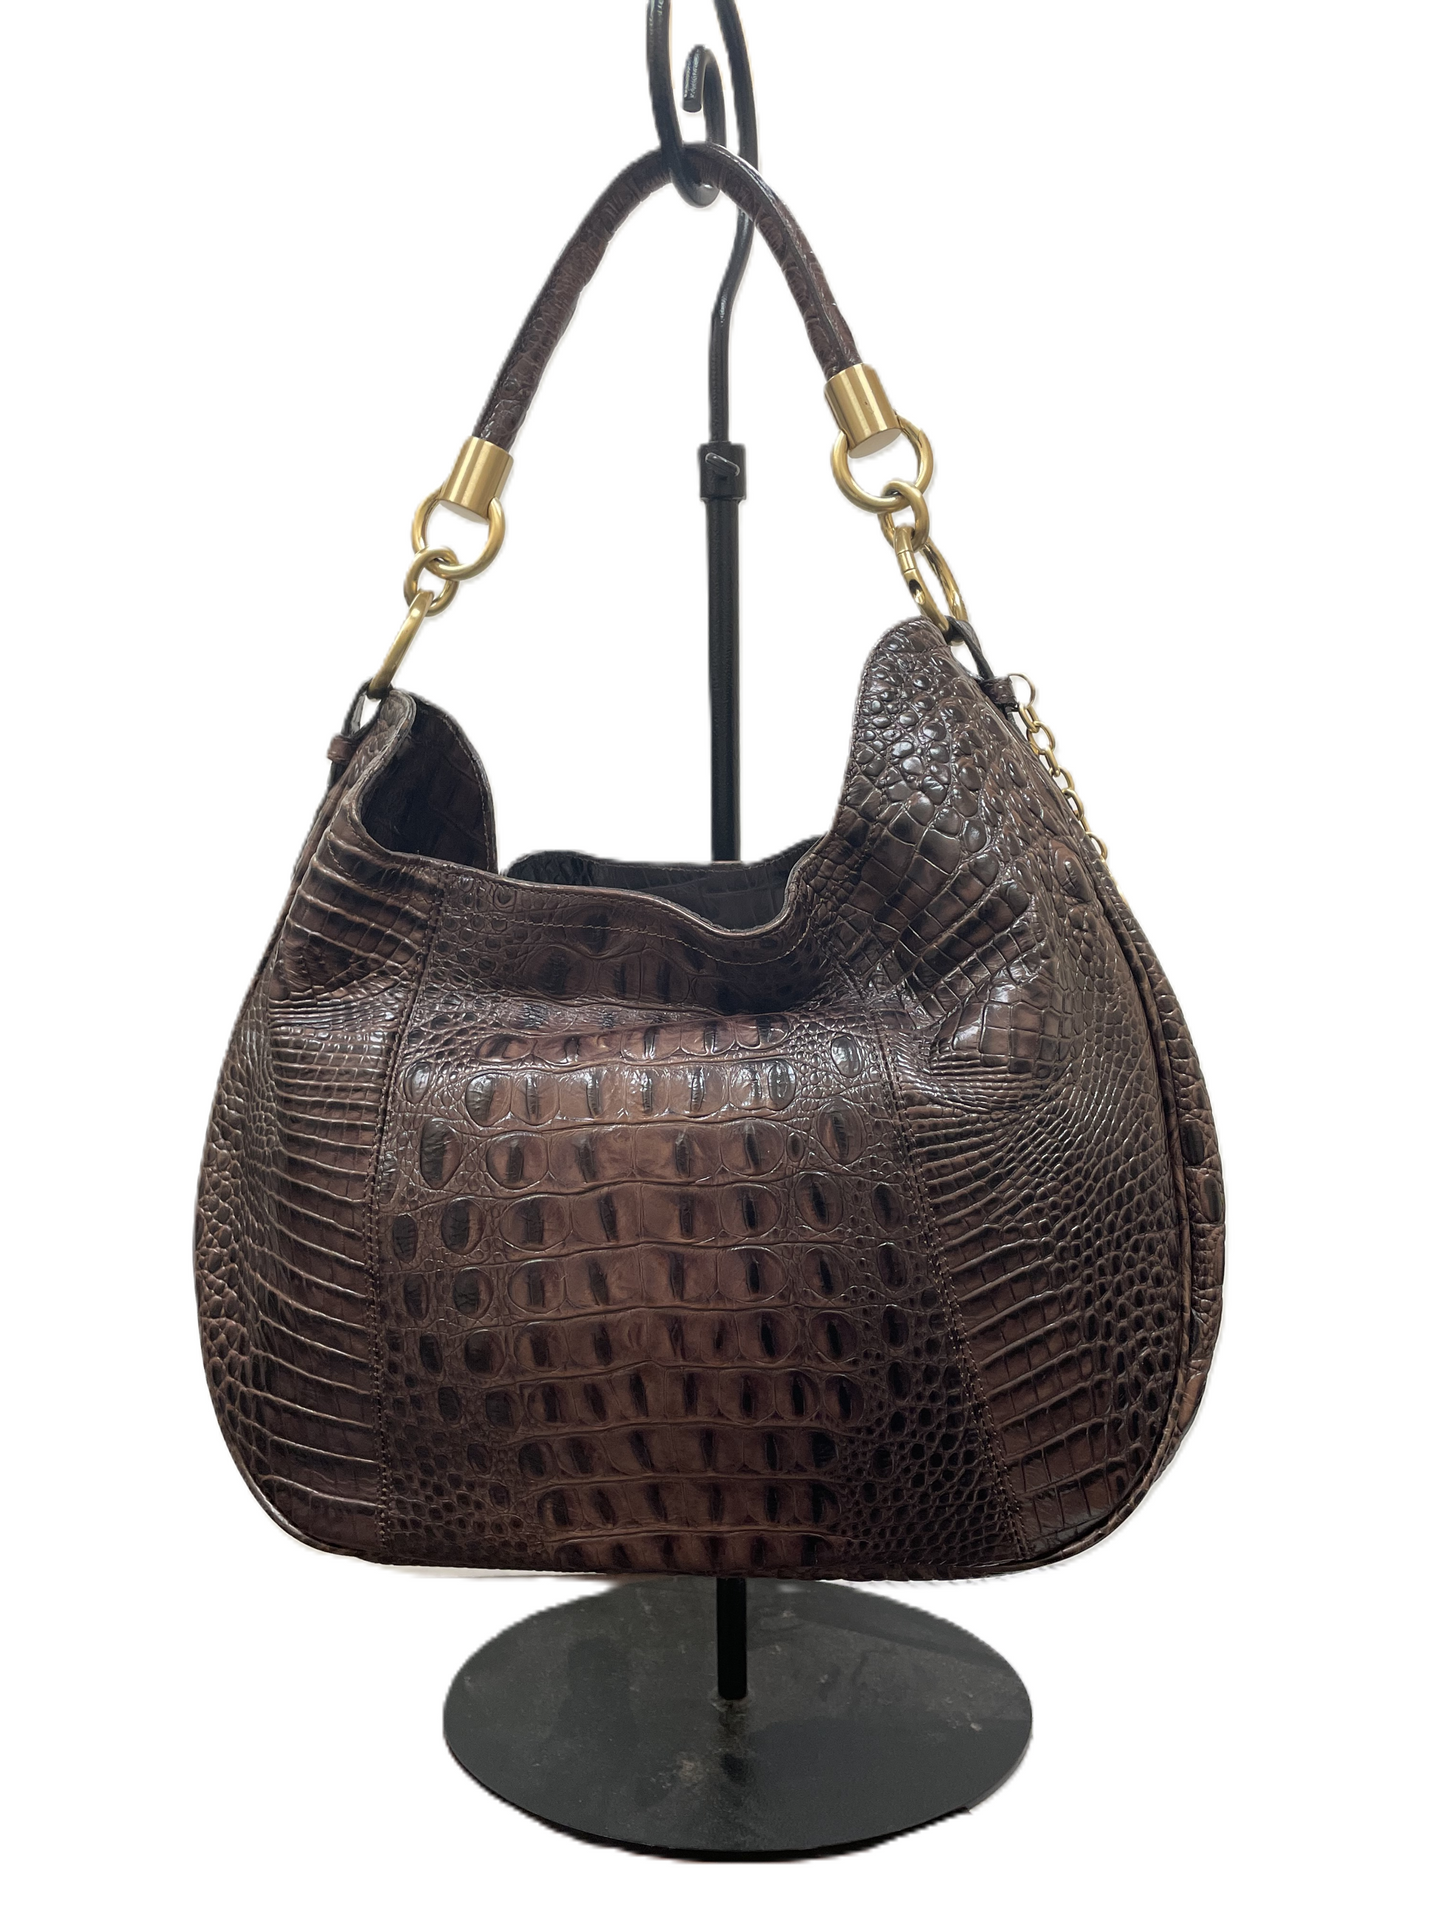 Handbag Designer By Brahmin, Size: Large